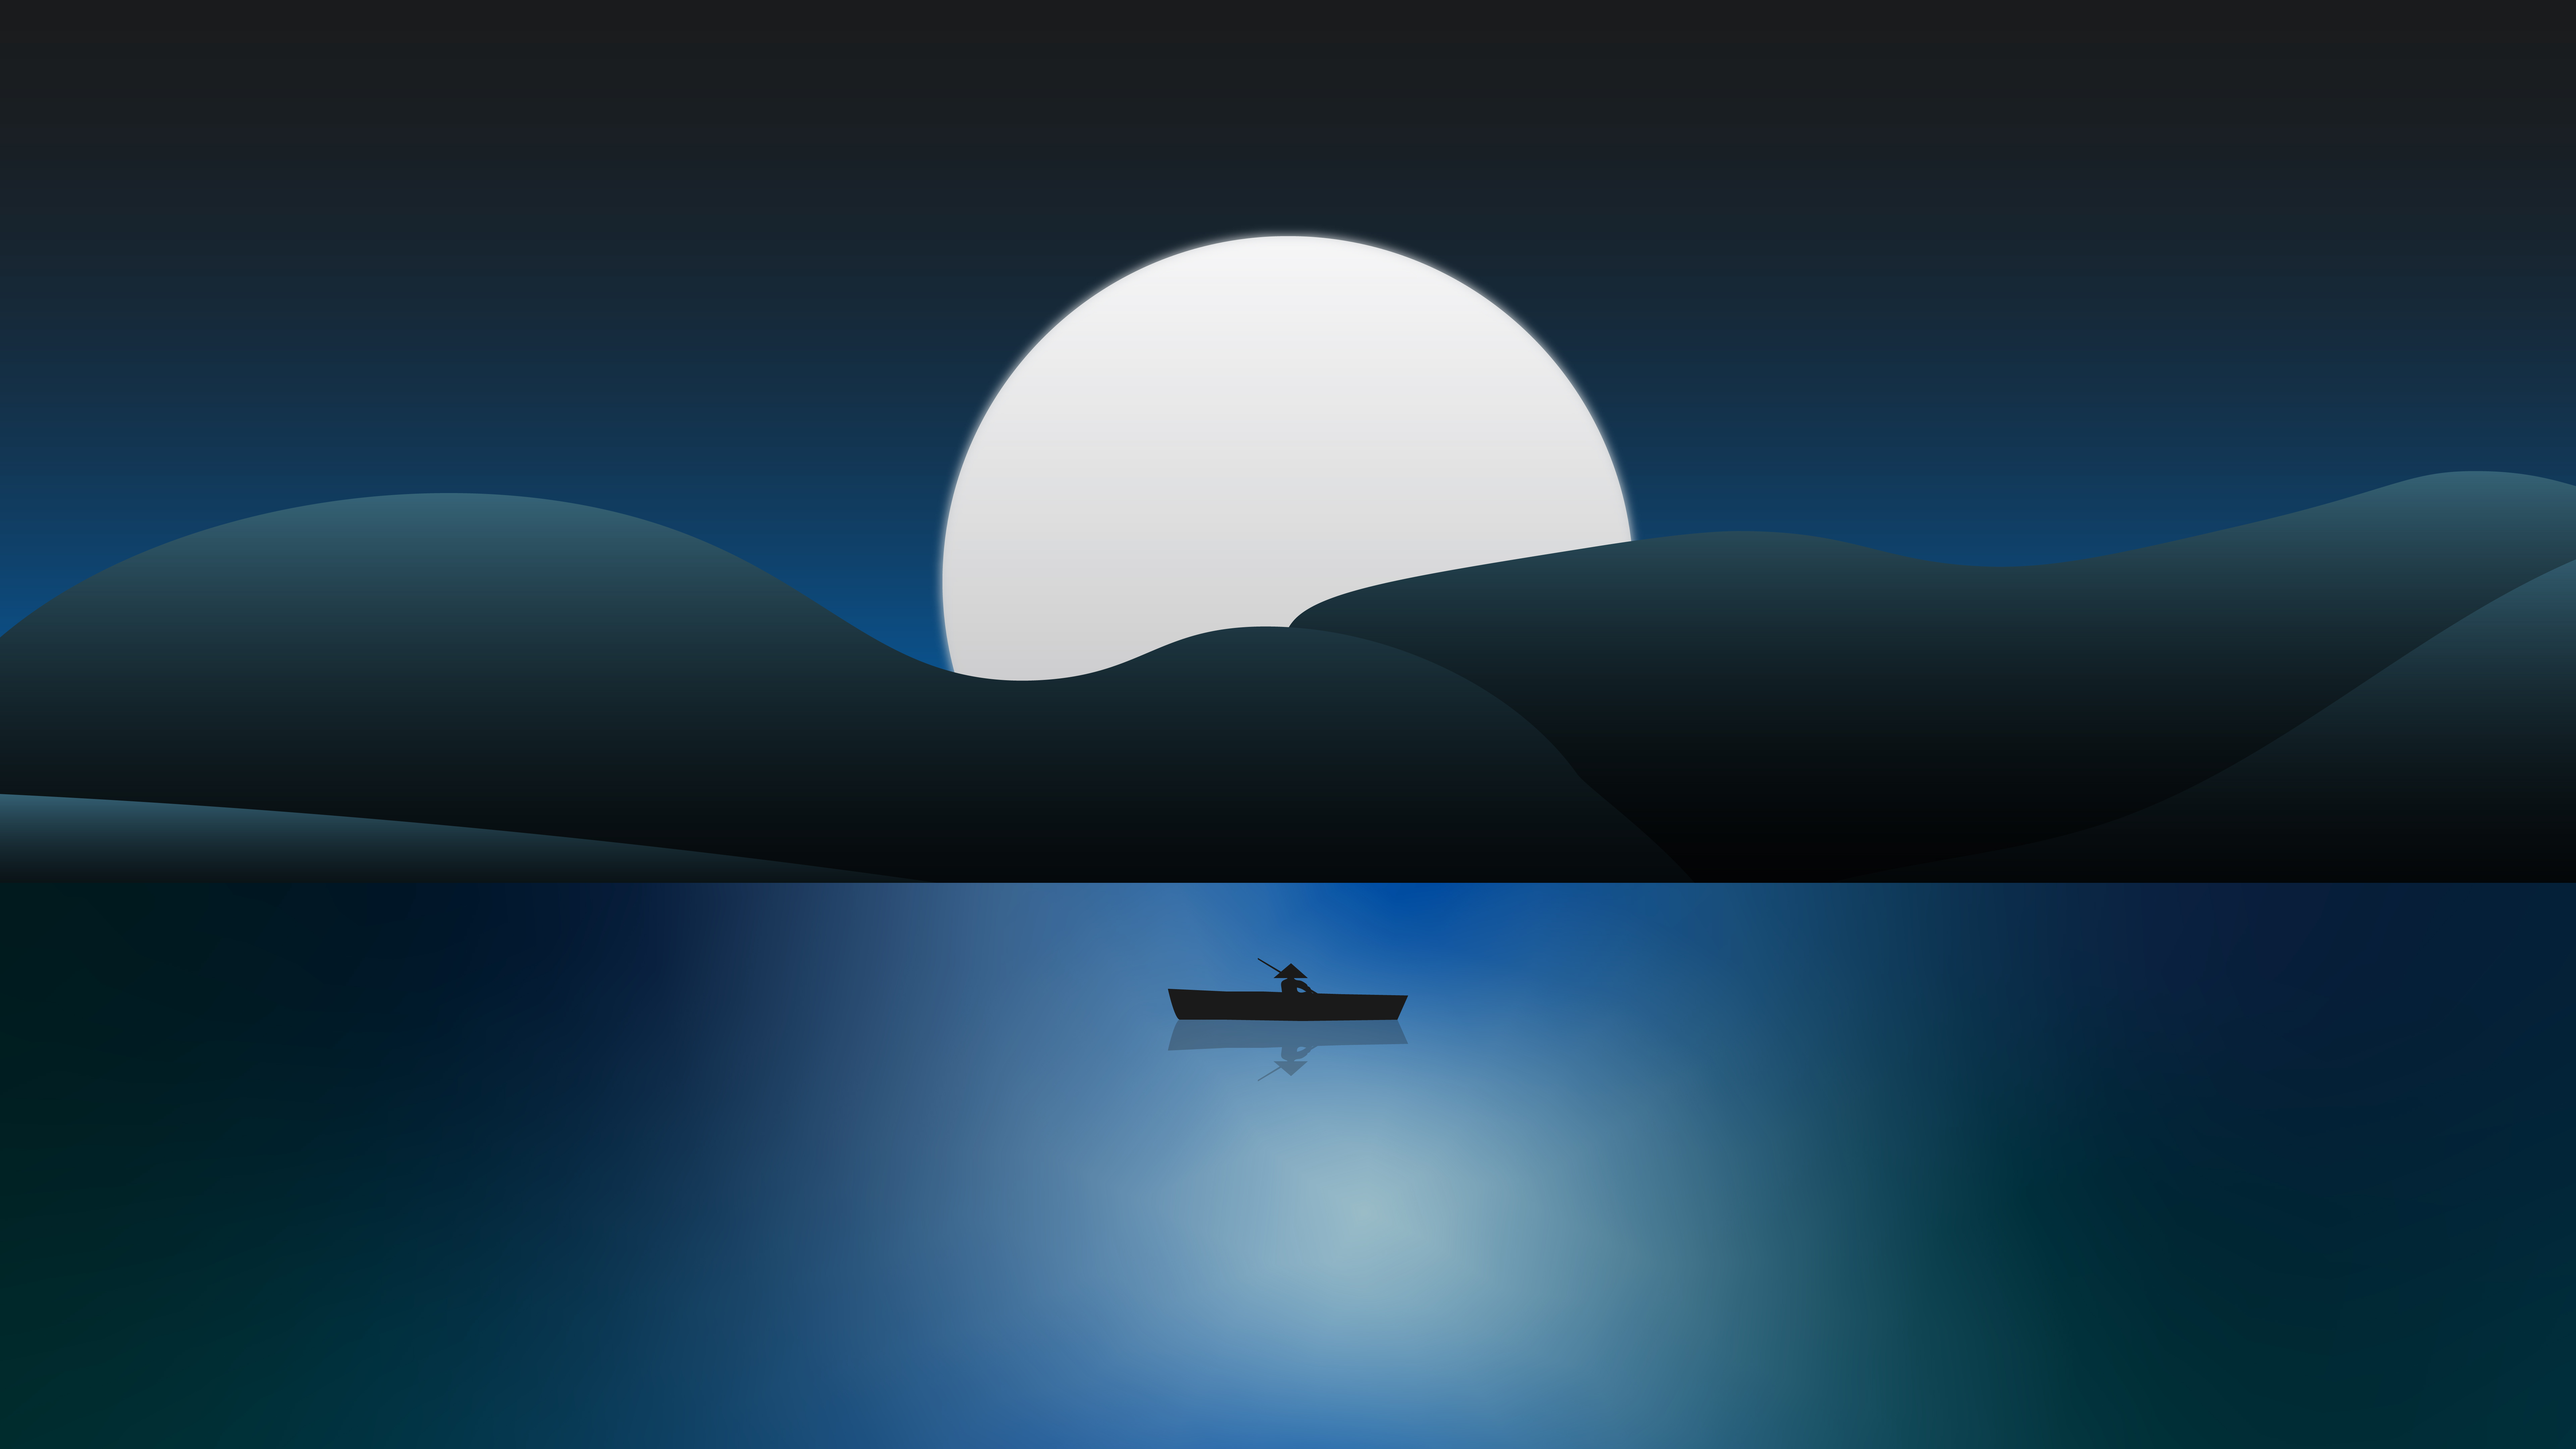 Boating At Night Digital Art Wallpapers